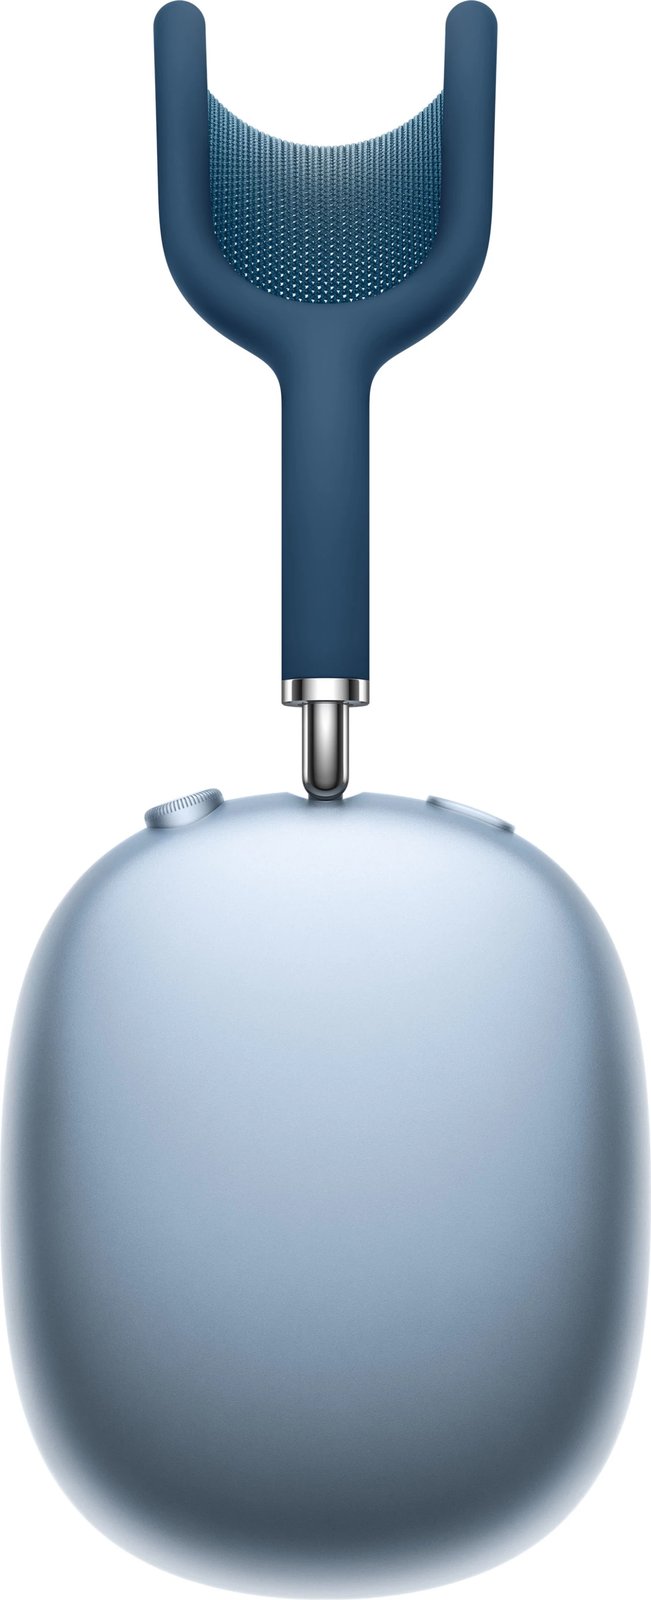 Kufje Apple AirPods Max, të kaltërta